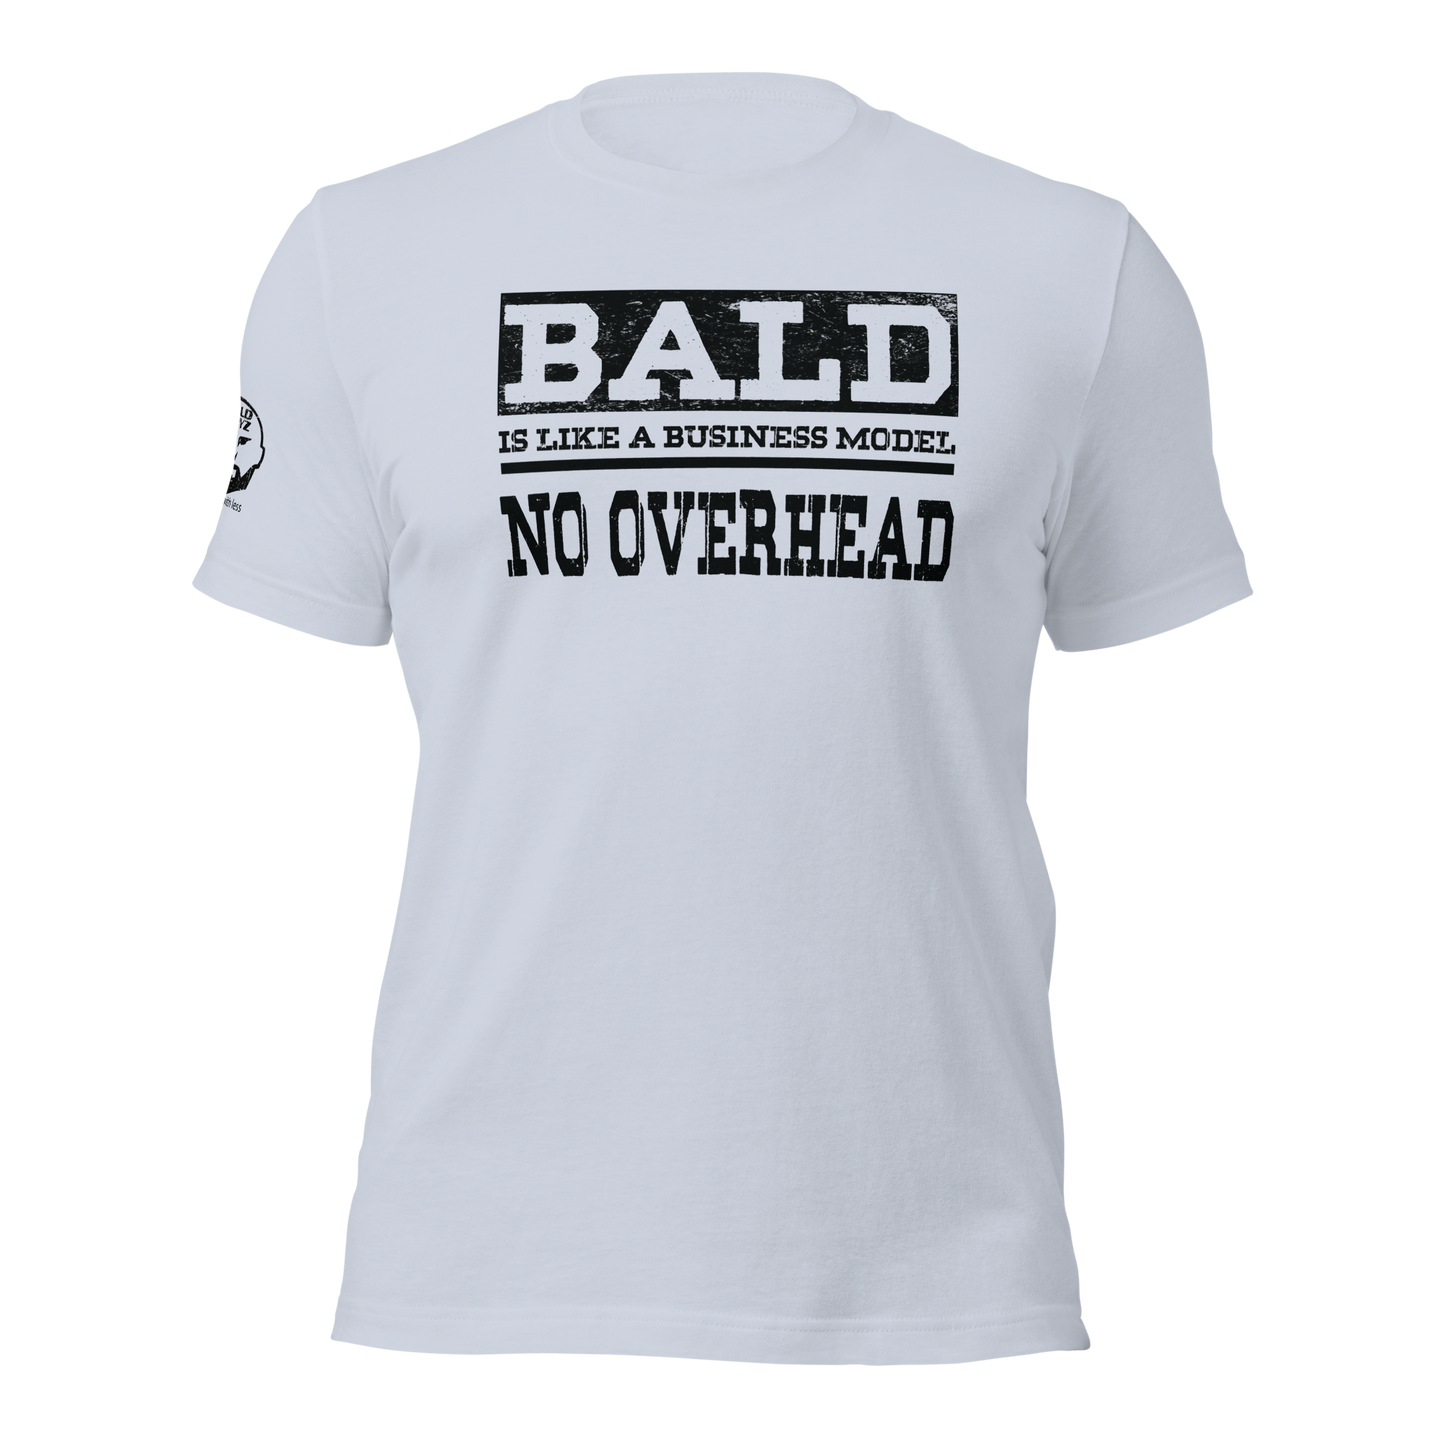 Bald Overhead Light t-shirt